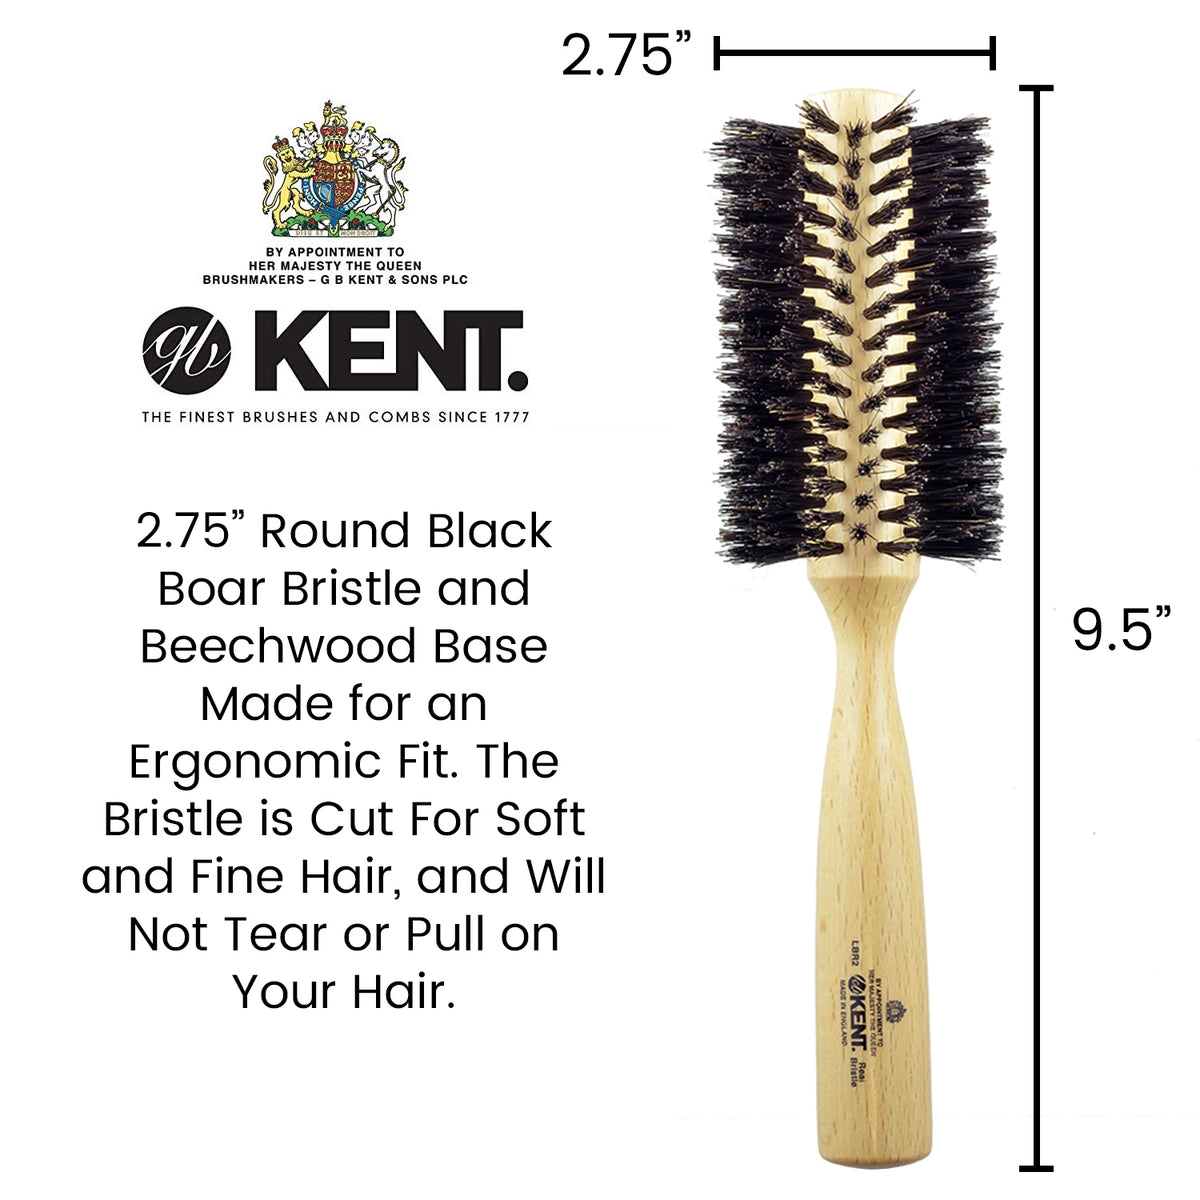 Mason Pearson P15 Handy Bristles Hair Brush - Bayside Brush Co.